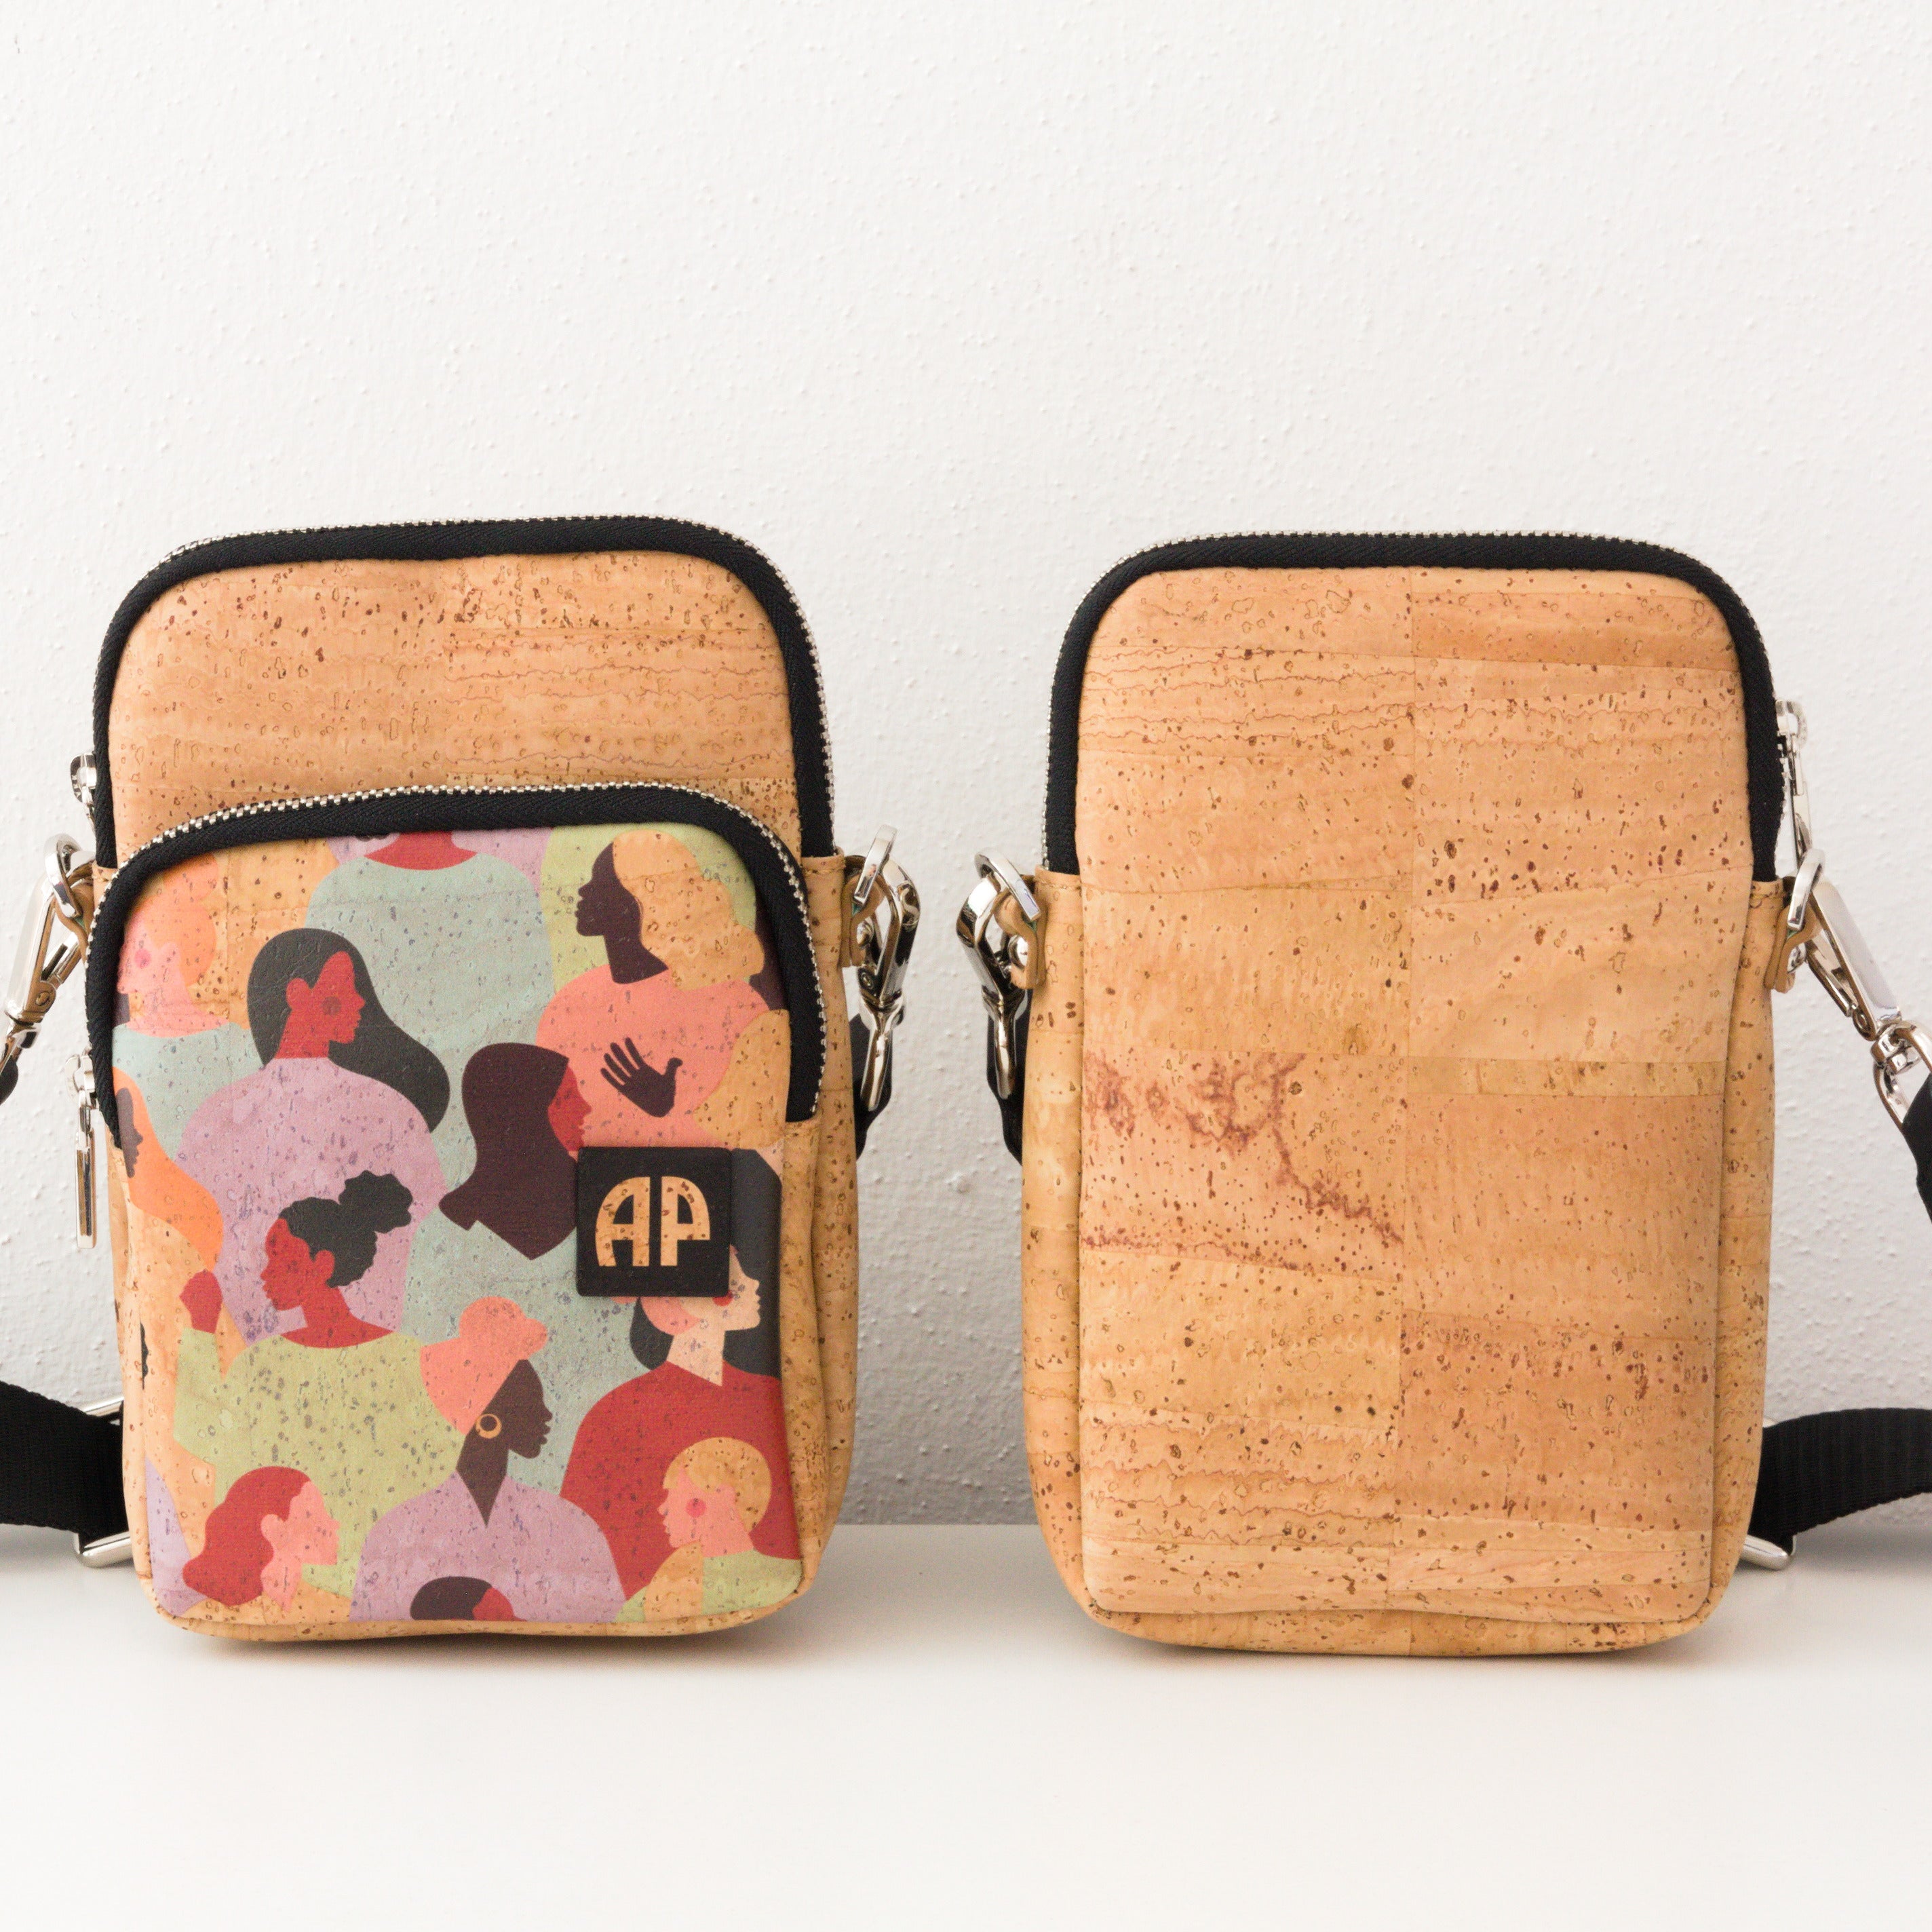 Cork mobile phone bag * 2 different designs * vegan * crossbody mobile phone bag * handmade in Portugal